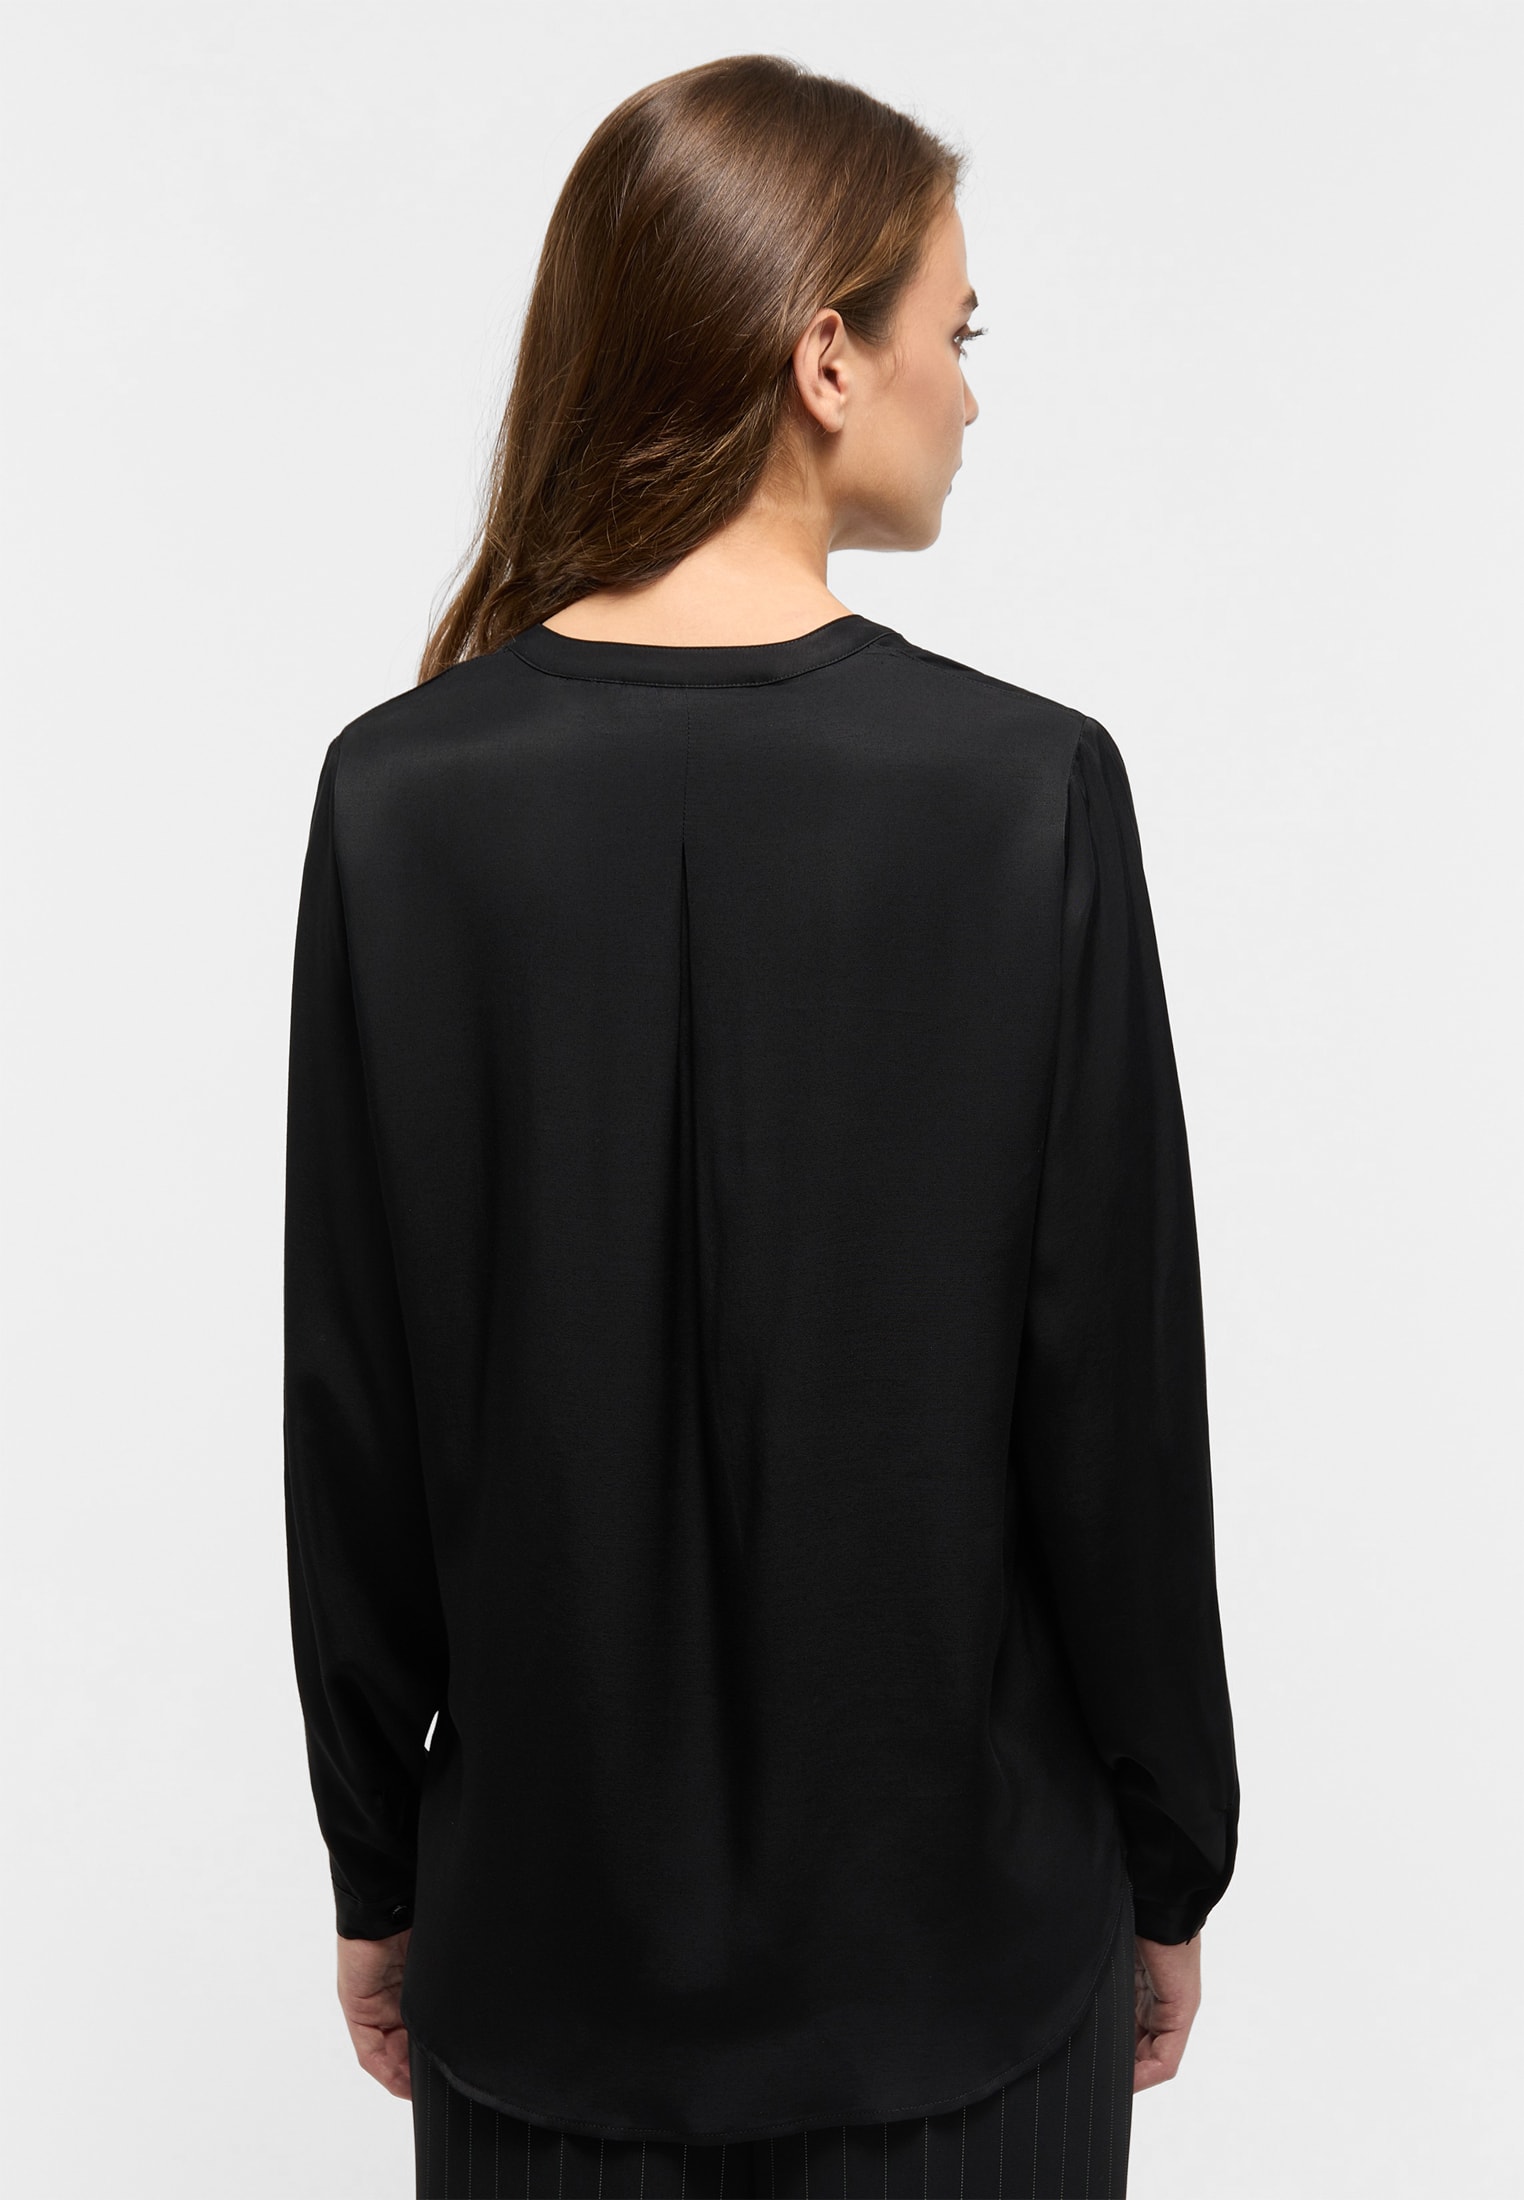 Viscose Shirt Bluse schwarz Langarm | in | 2BL00329-03-91-34-1/1 | schwarz | 34 unifarben